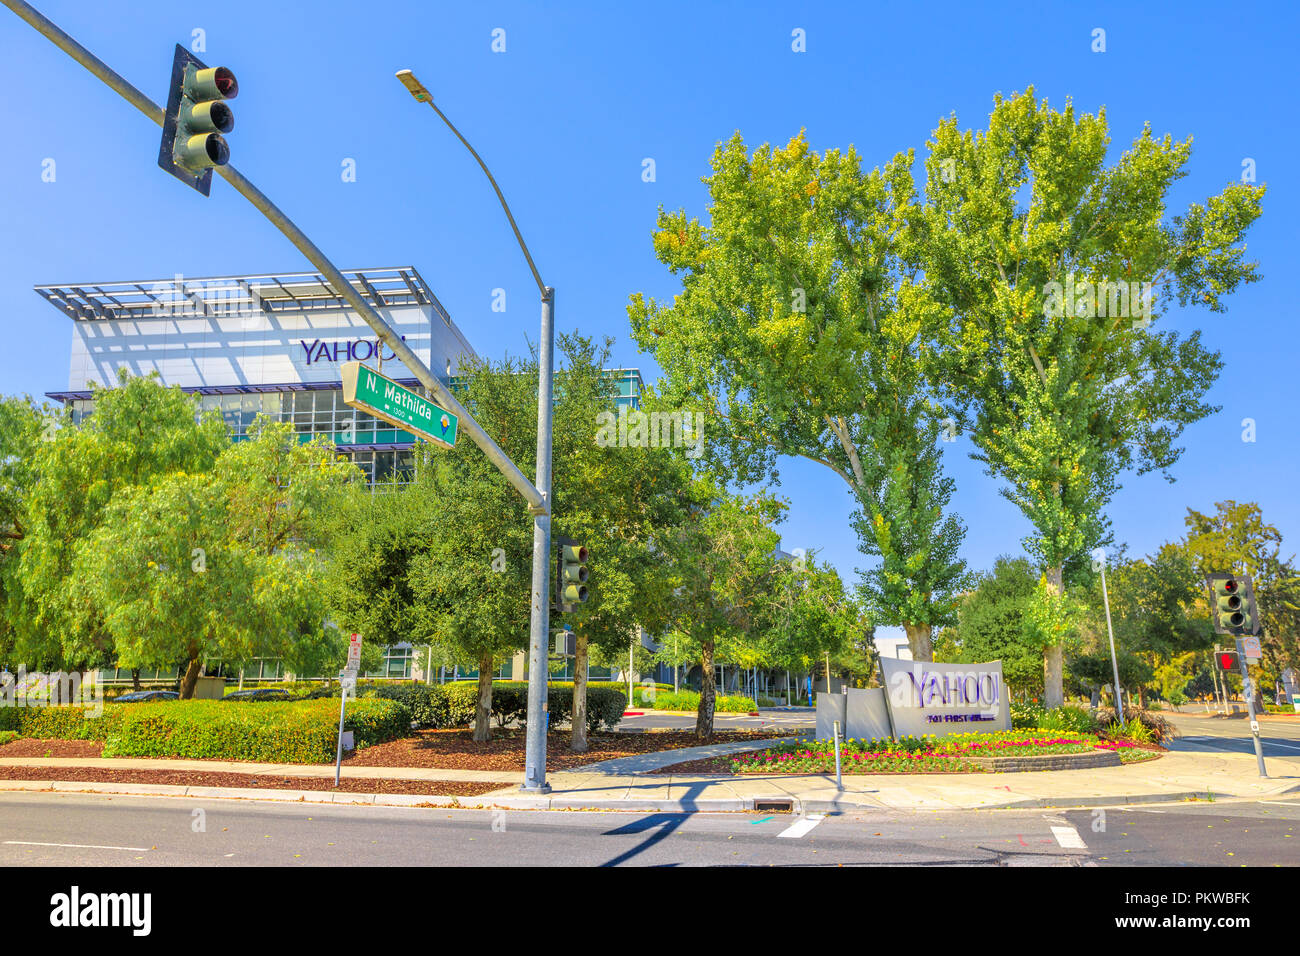 Sunnyvale, Kalifornien, USA - 12. August 2018: Yahoo Inc. in der Zentrale - Gebäude E, 700 Erste Ave N Mathilda Ave, Silicon Valley. Yahoo ist einer der wichtigsten Suchmaschine Portale Stockfoto